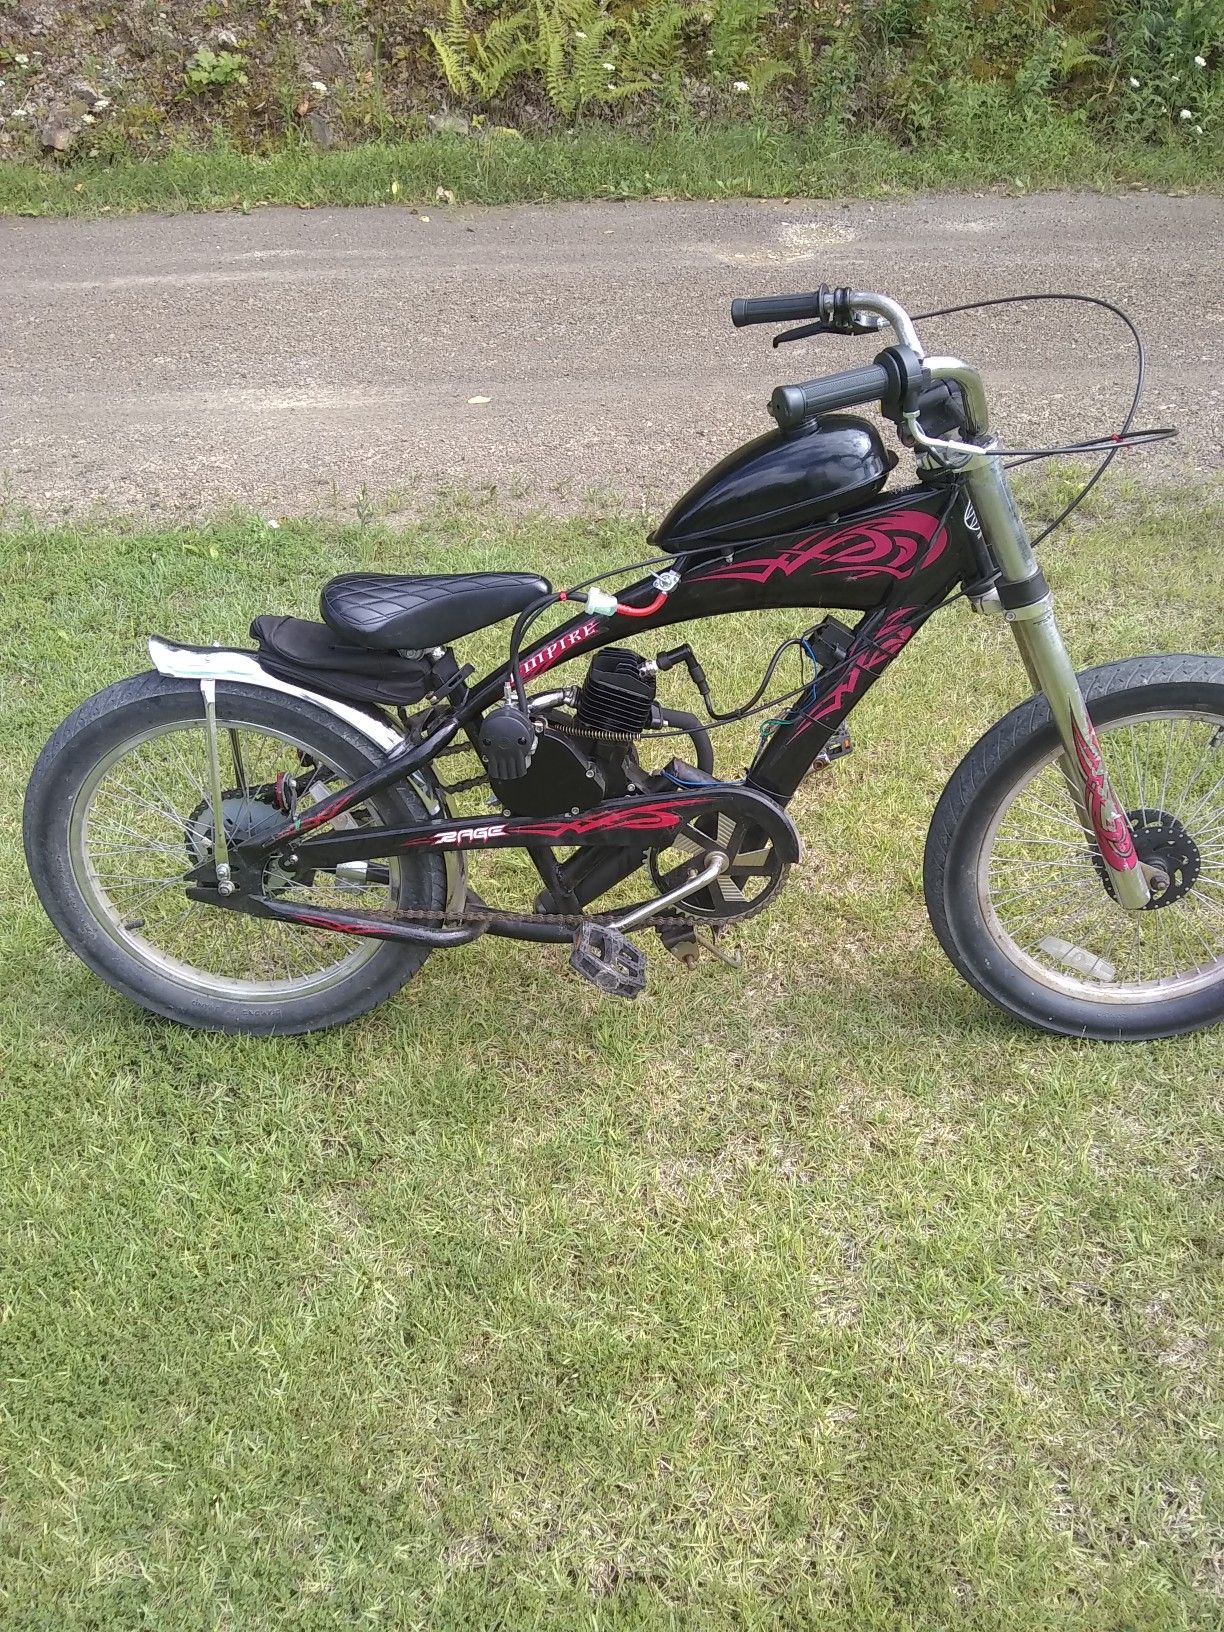 Motorized peddle bike